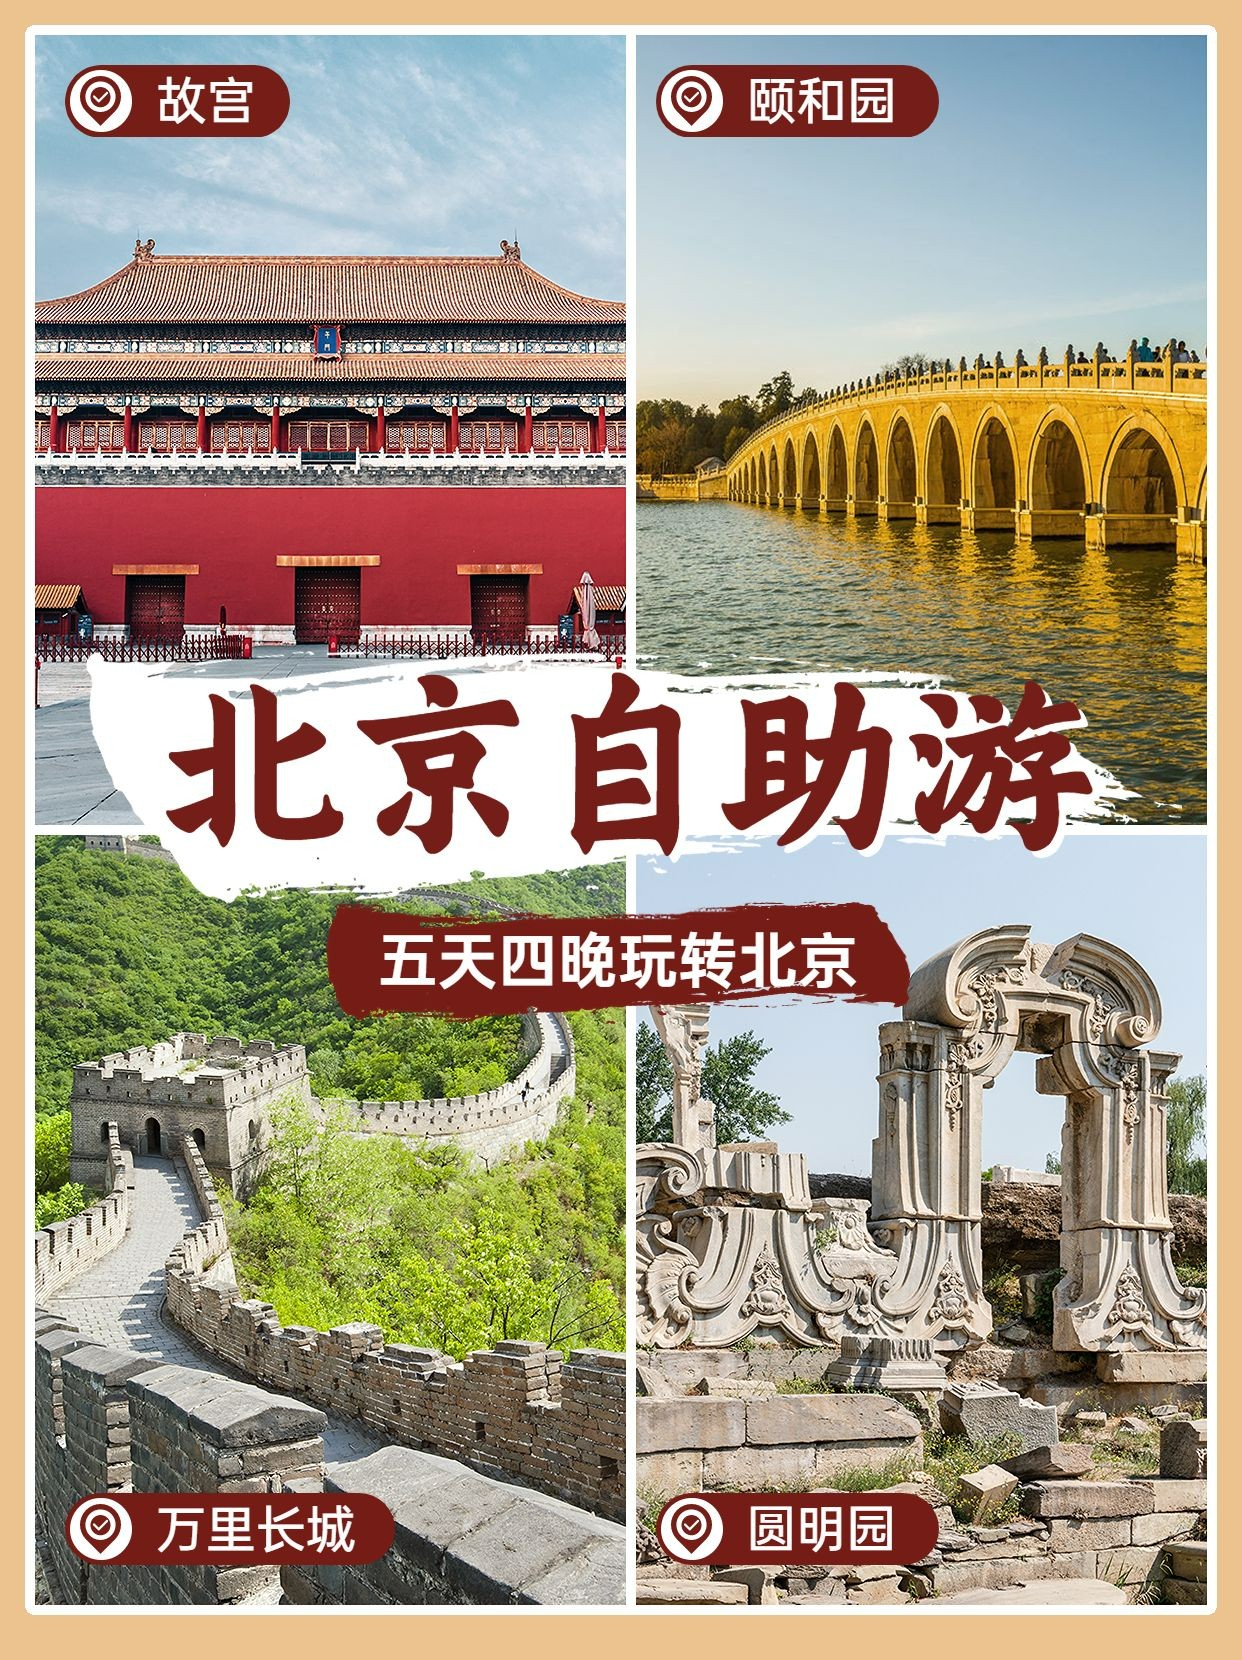 旅游出行北京景点推荐小红书配图预览效果